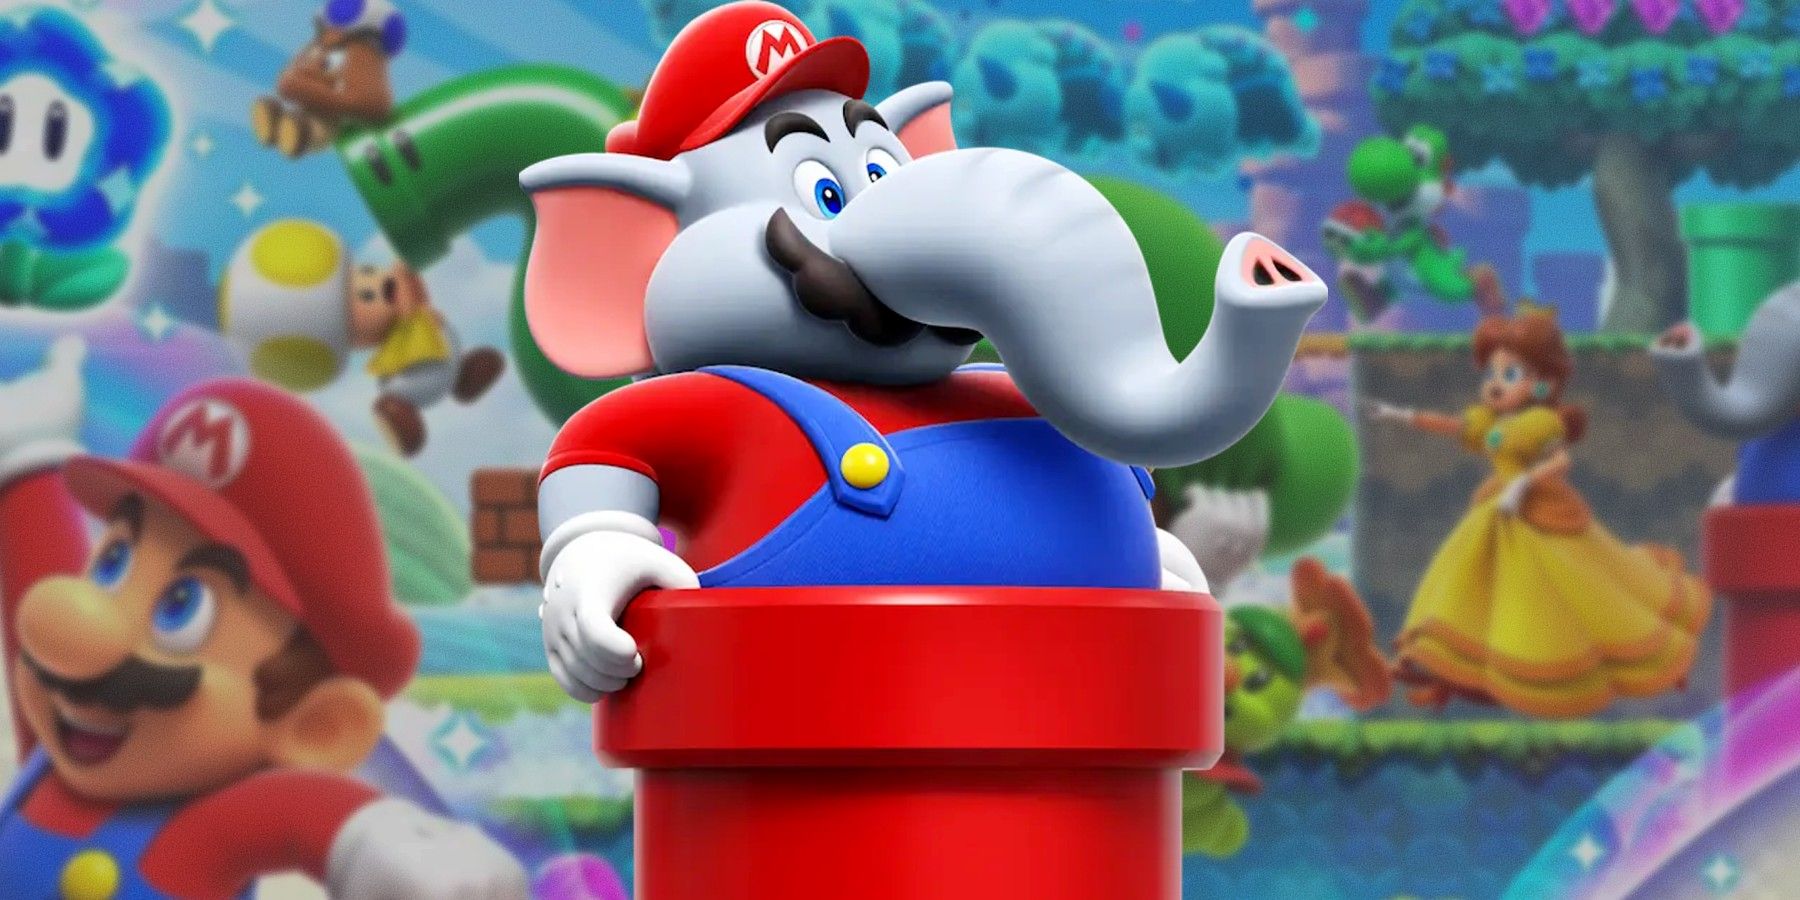 Reseña de Super Mario Bros. Wonder: “La aventura más mágica de Mario”